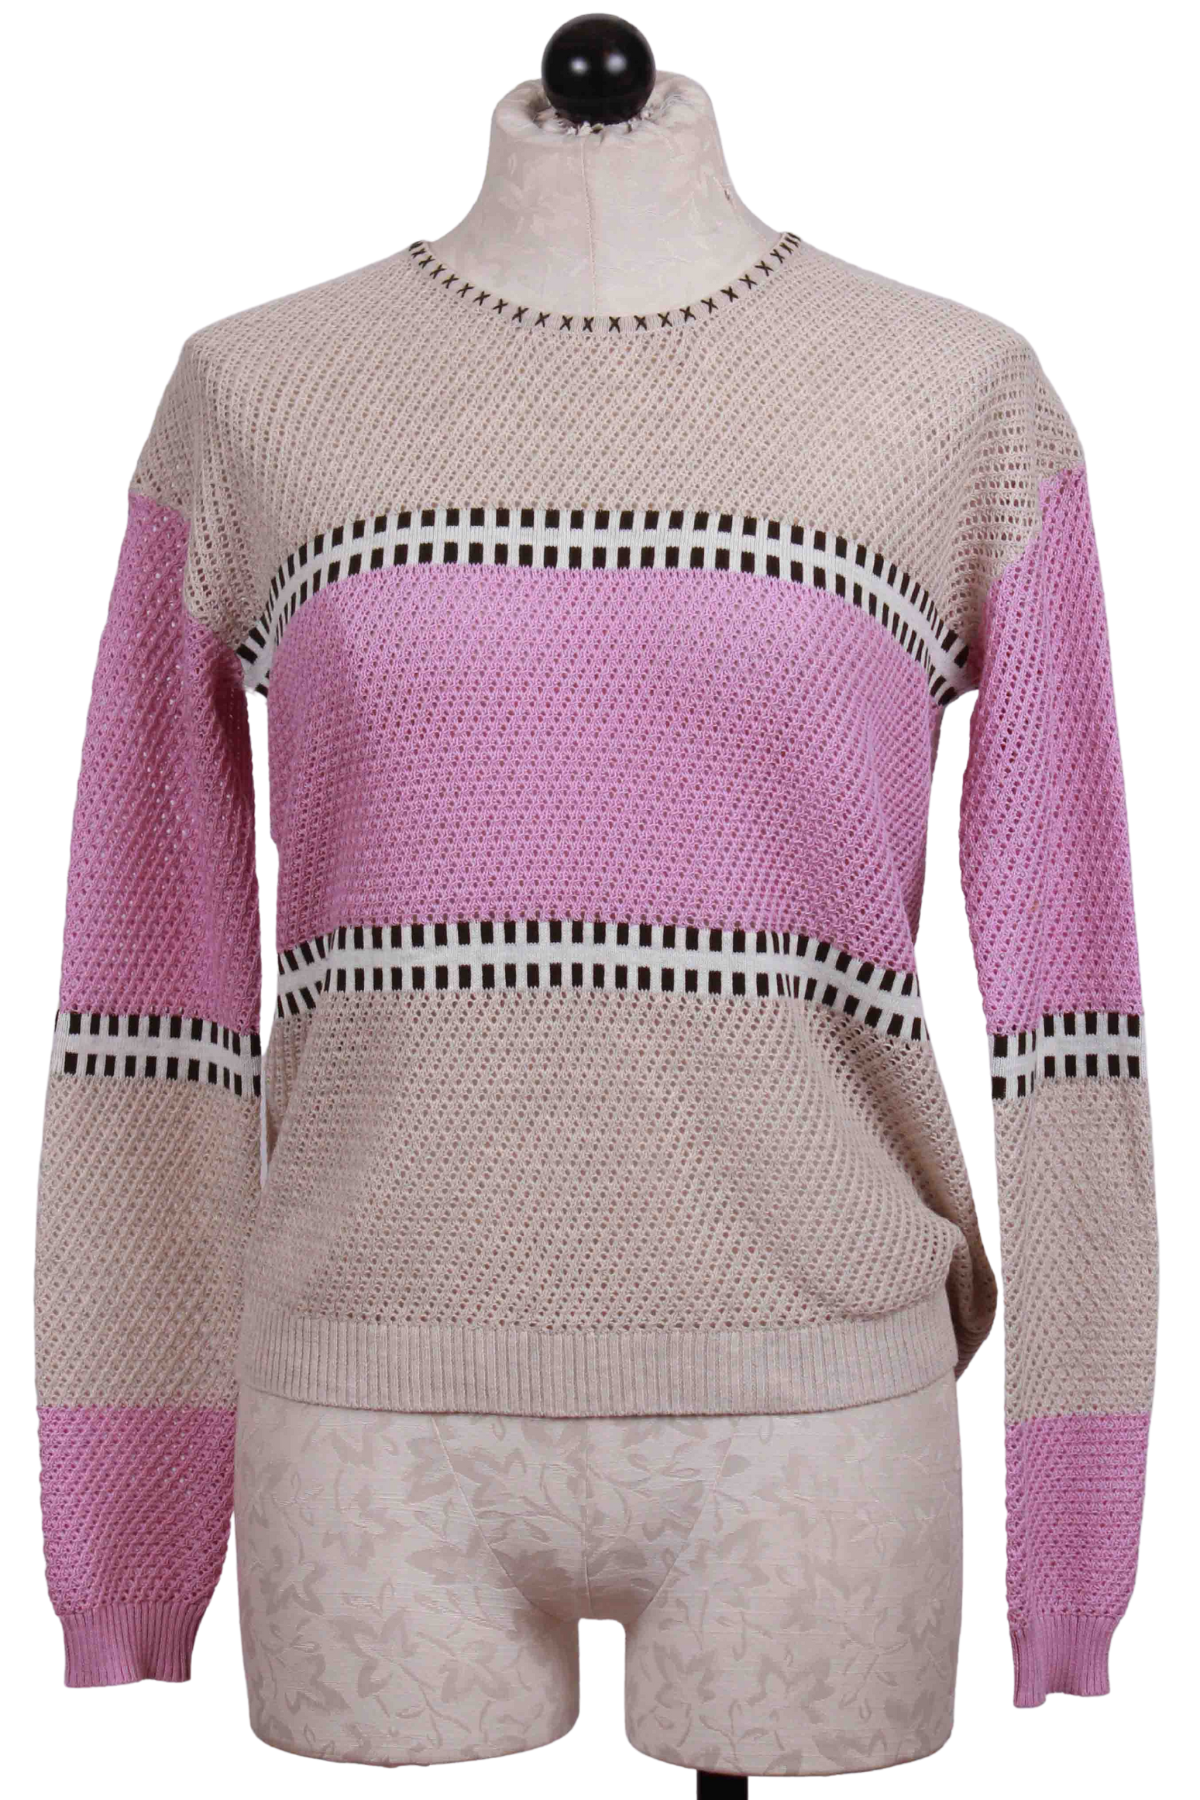 Dune/Starlight XOX Sweater by Lisa Todd 